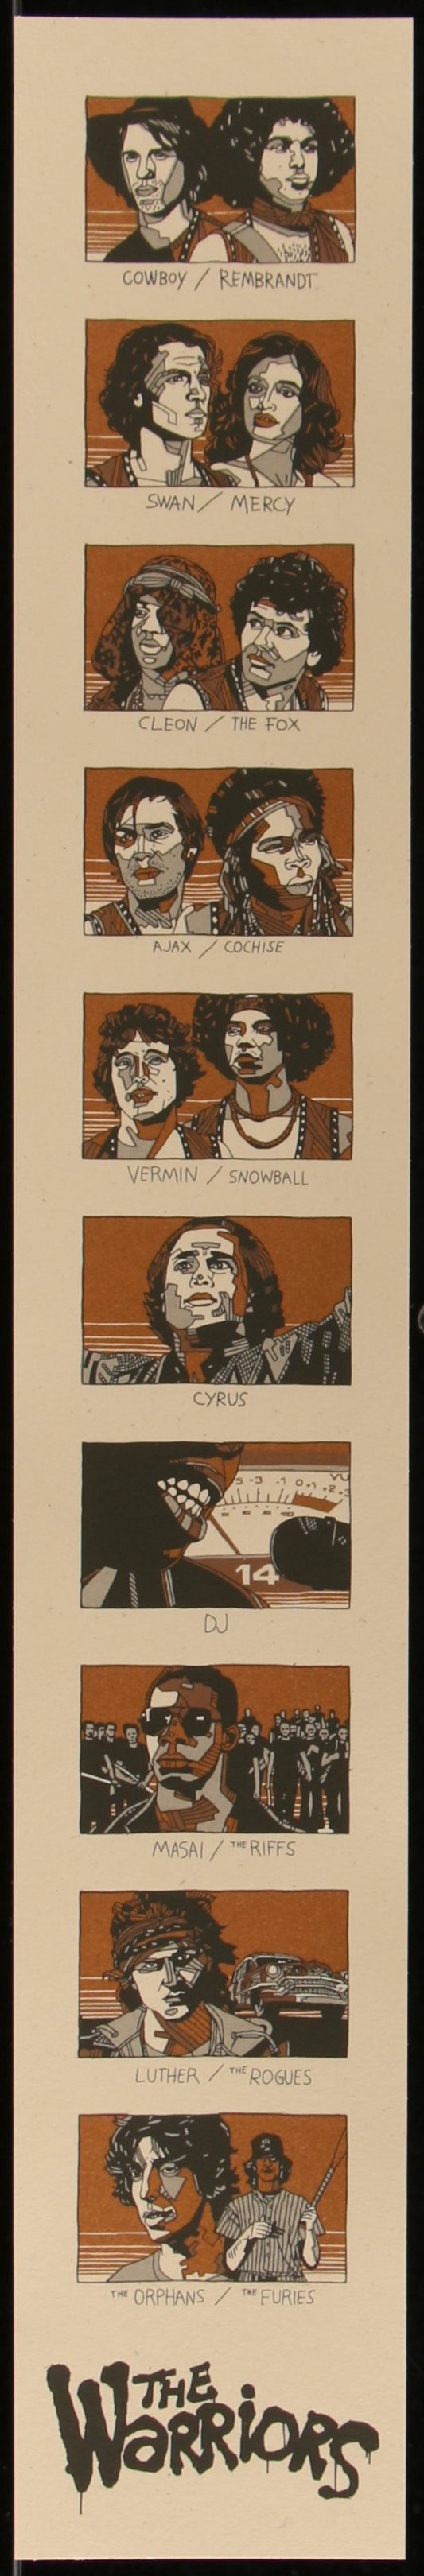 The Warriors (1979) Original Mondo Limited Edition Handbill Art Print By Tyler Stout